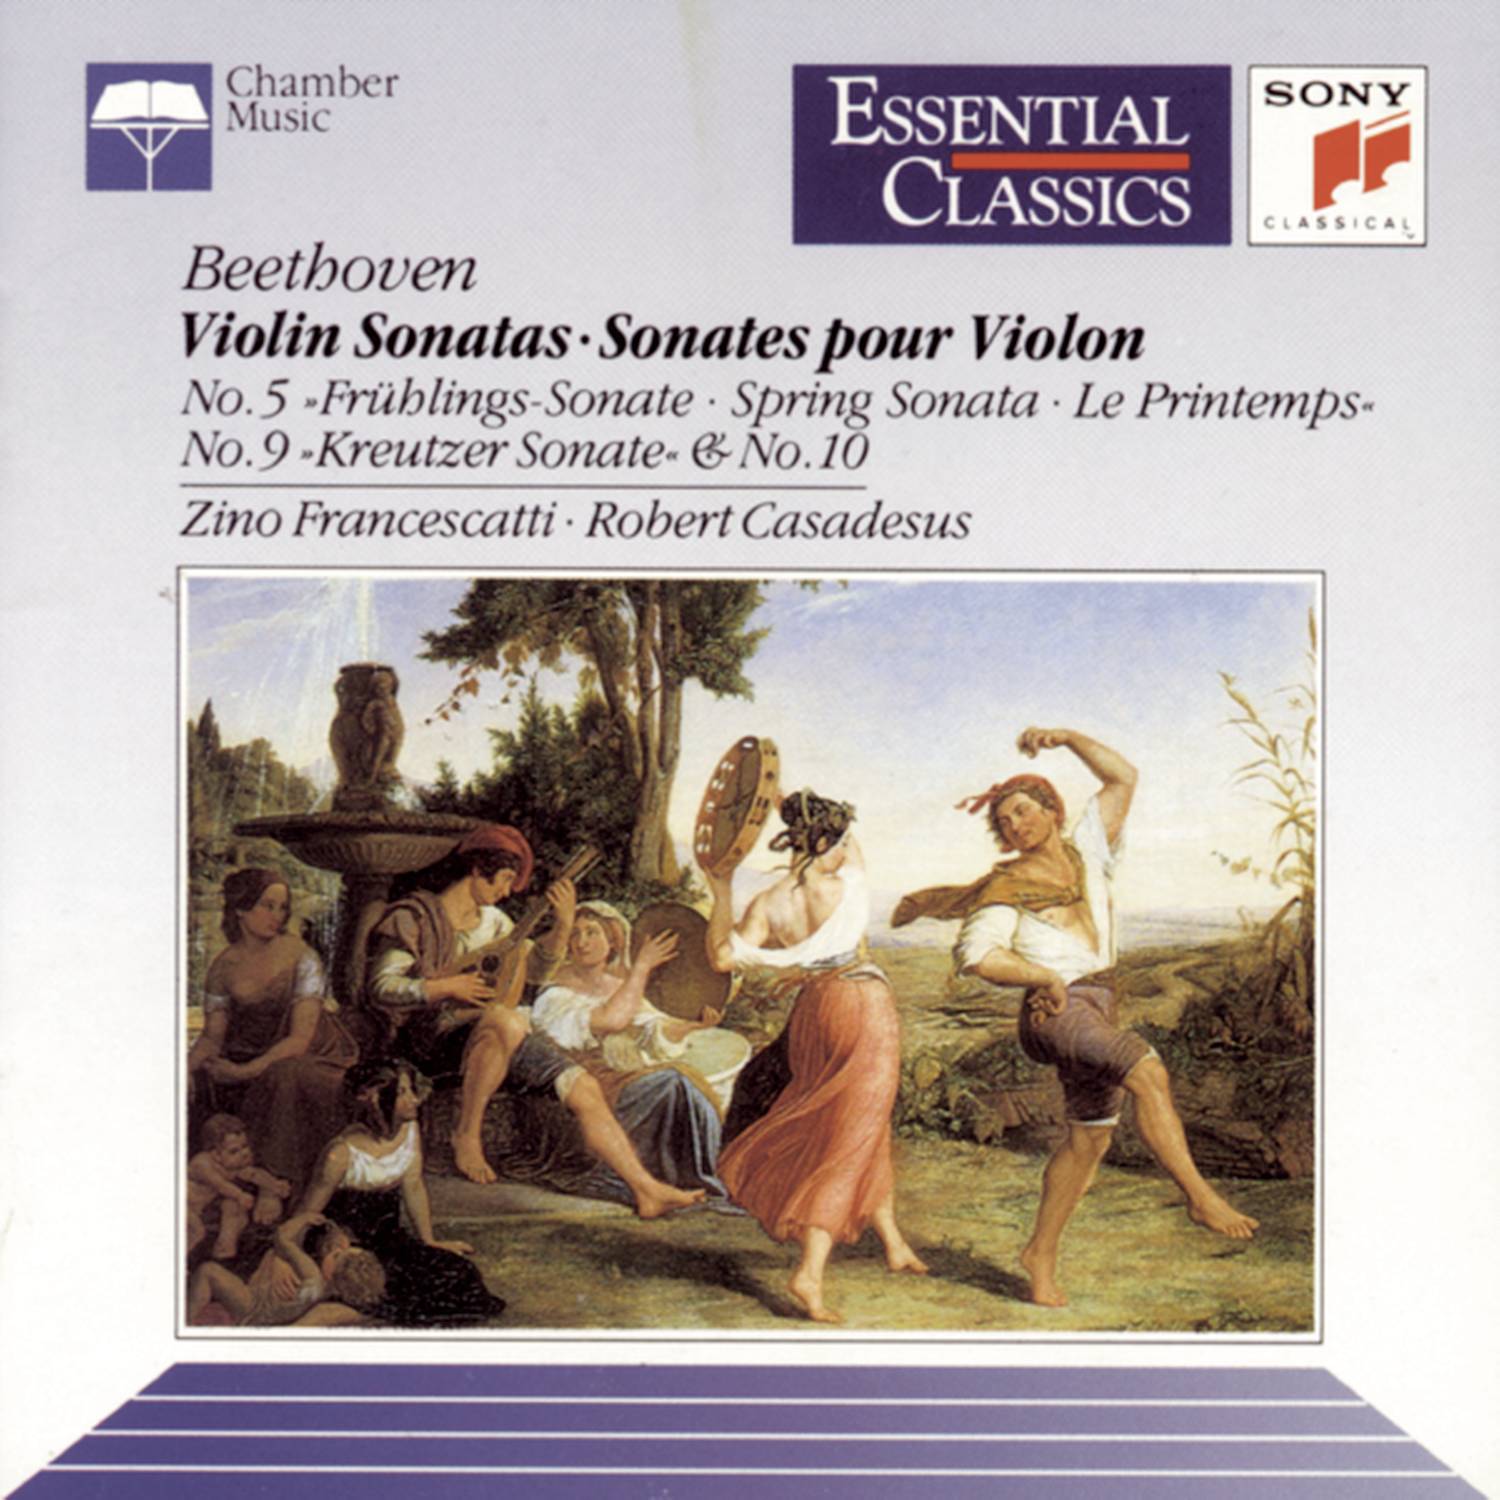 Sonata No. 10 in G Major for Violin and Piano, Op. 96: IV.  Poco allegretto; Adagio espressivo; Allegro